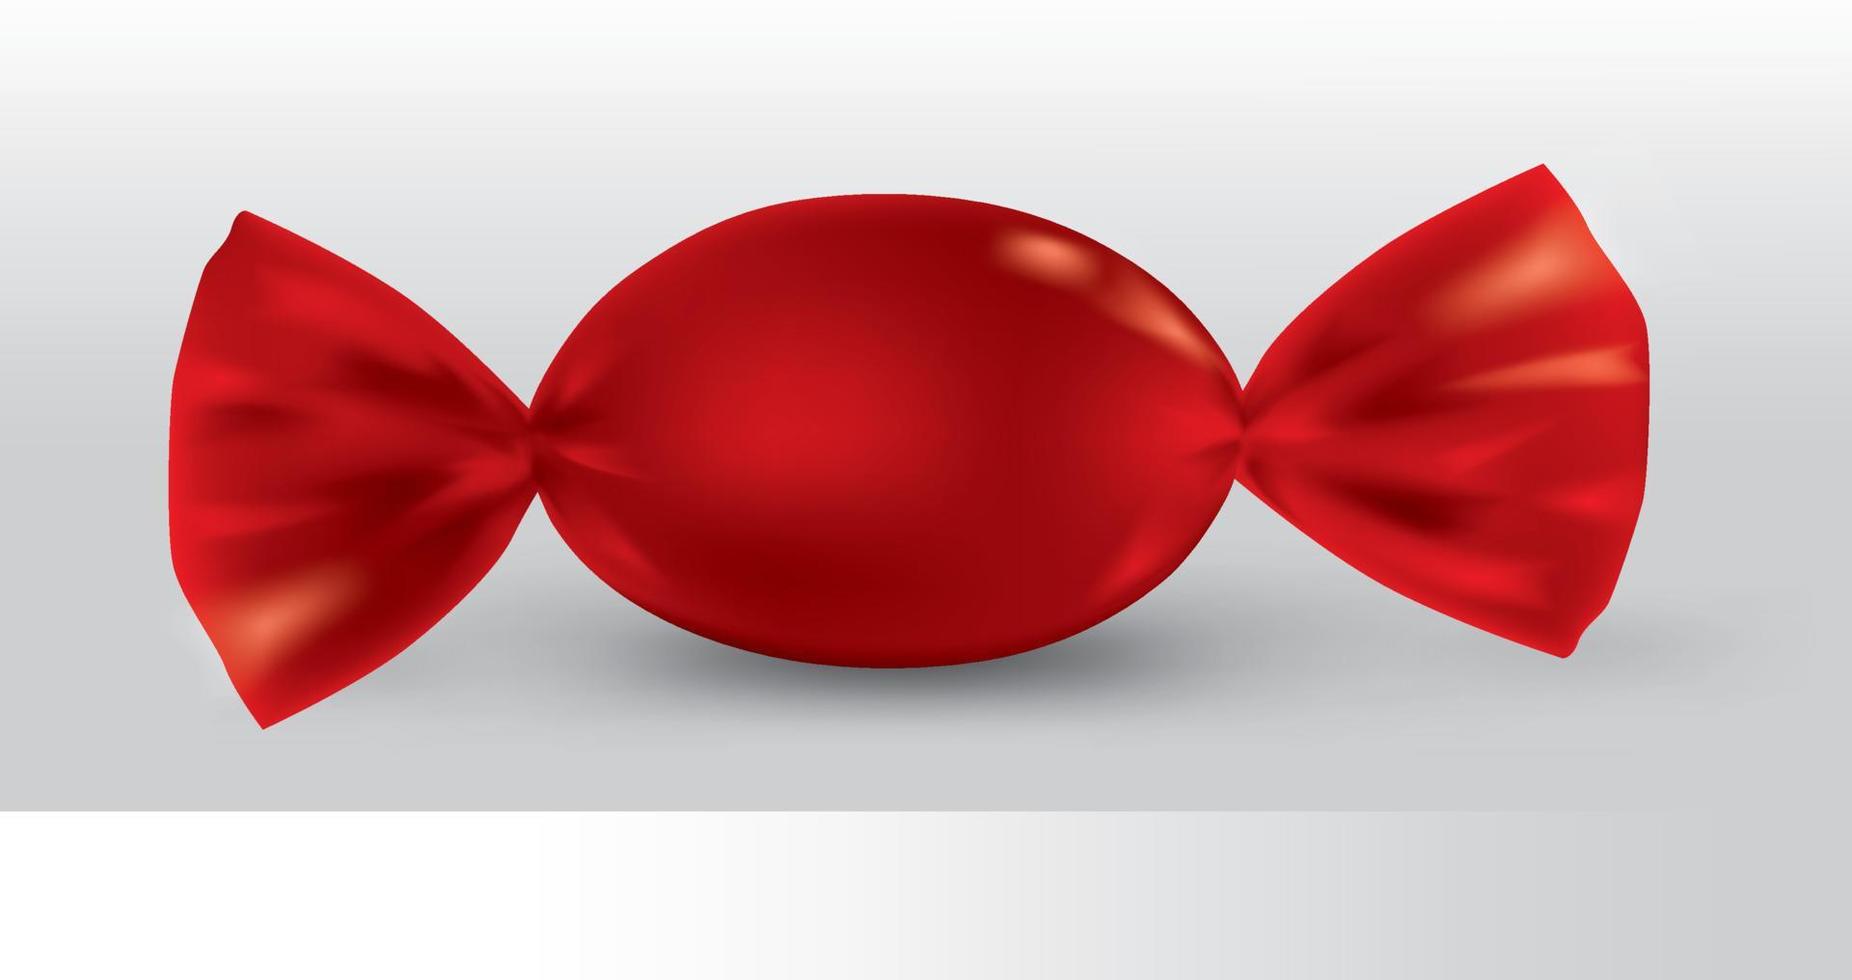 rött ovalt godispaket för ny design, isolering av produkten på en vit bakgrund med reflektioner och lödning röd färg. vektor